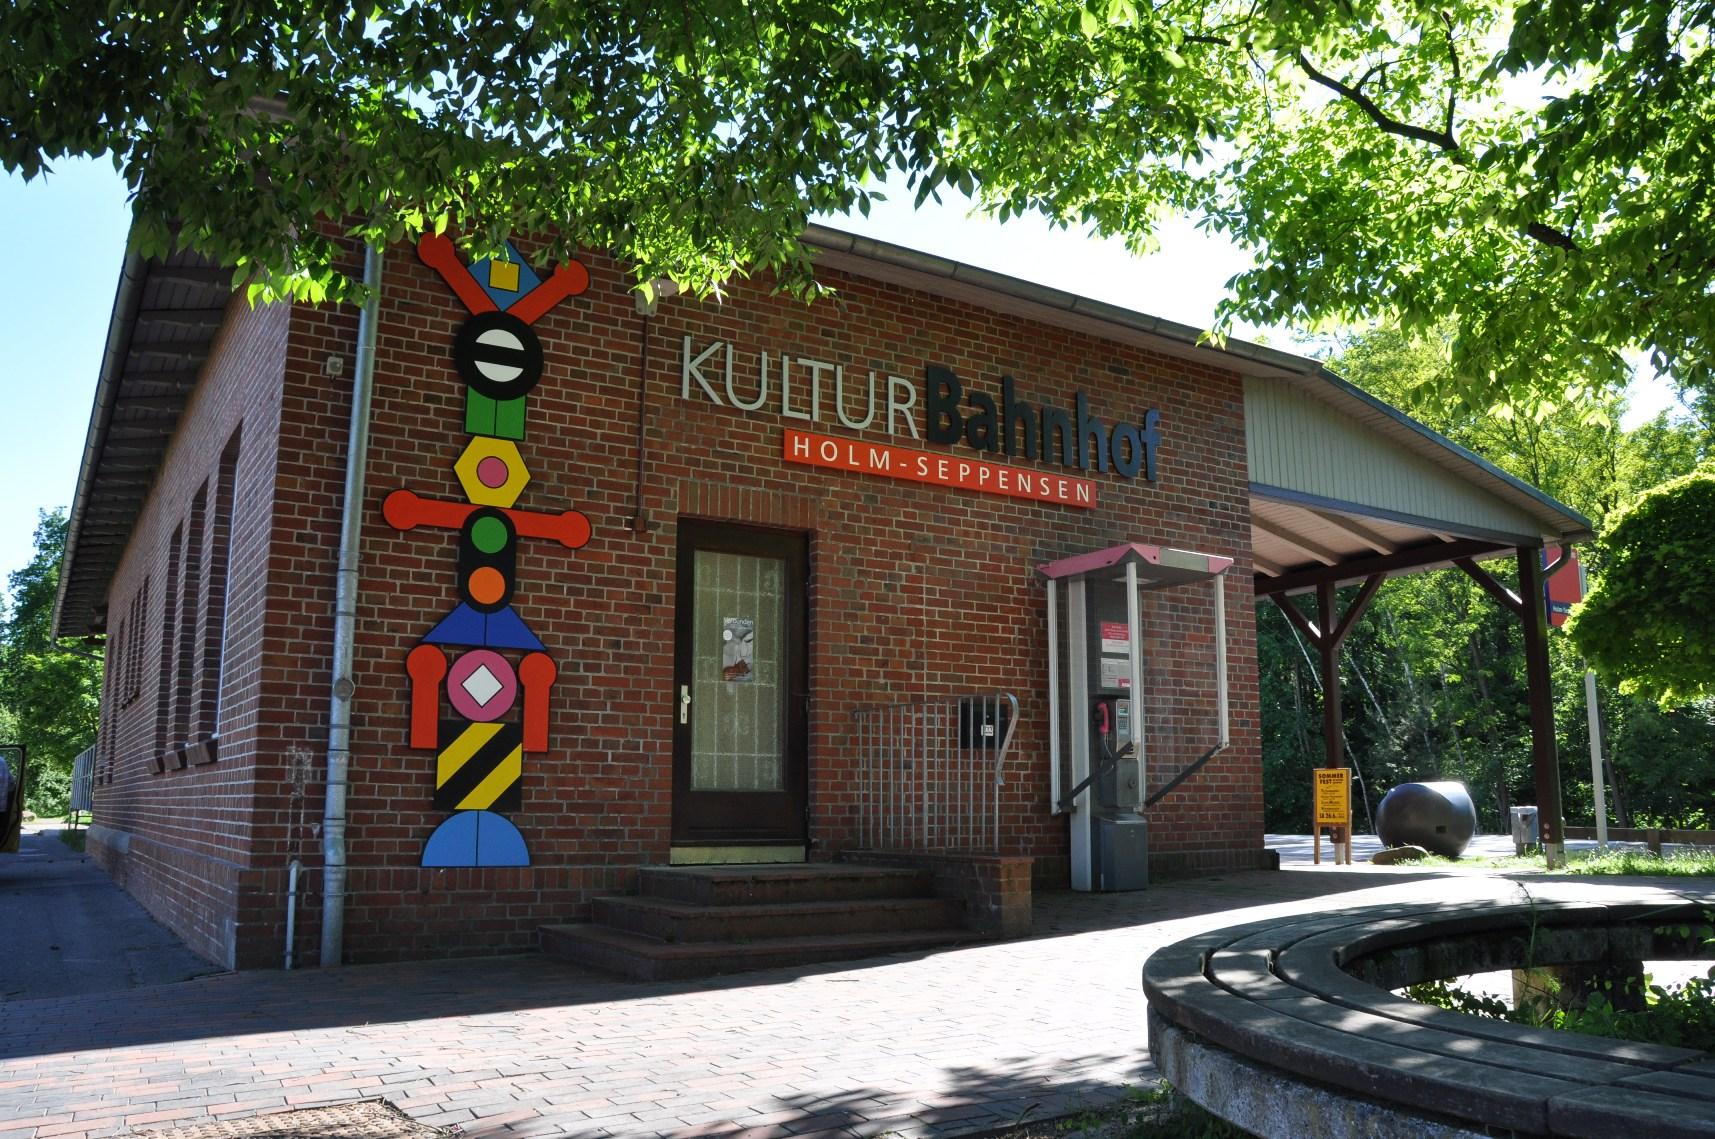 Kulturbahnhof Holm-Seppensen